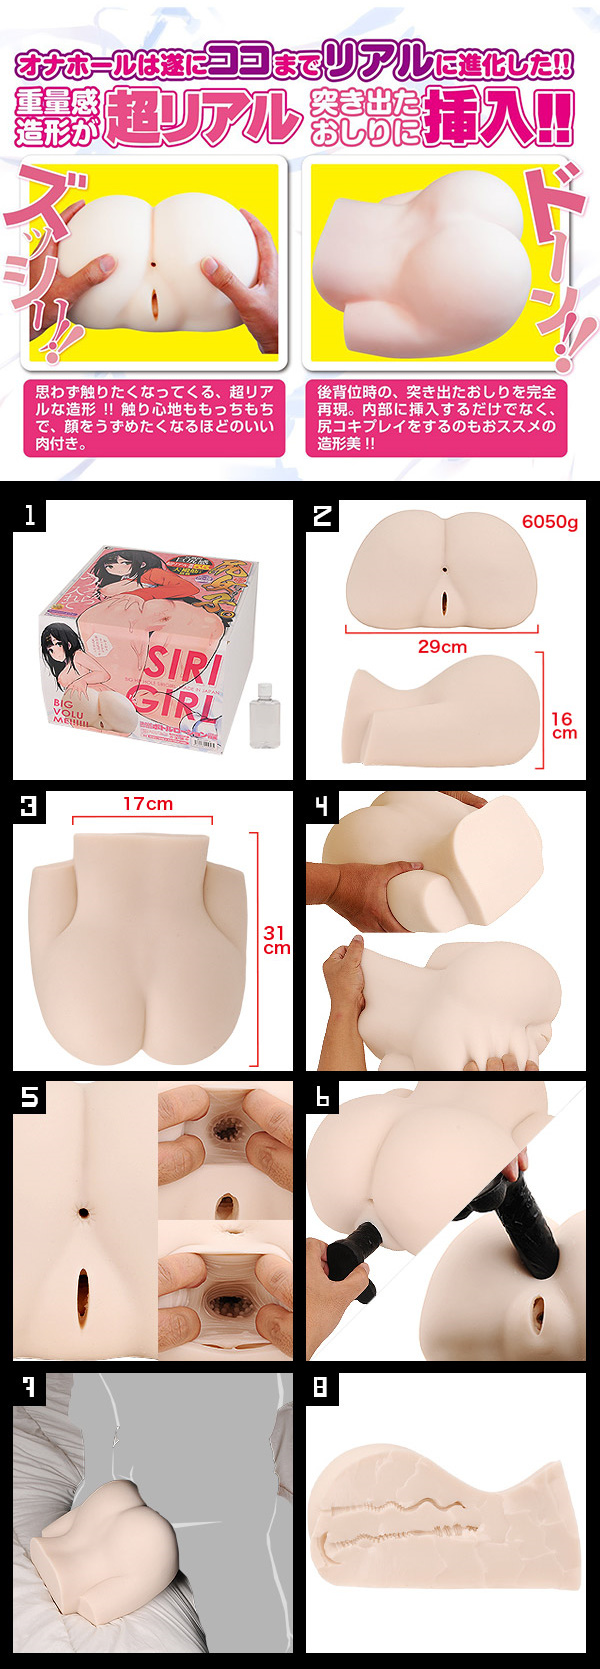 日本A-one．SIRI GIIRL尻女子 5.5KG壓倒性巨尻感 雙穴構造大型自慰器